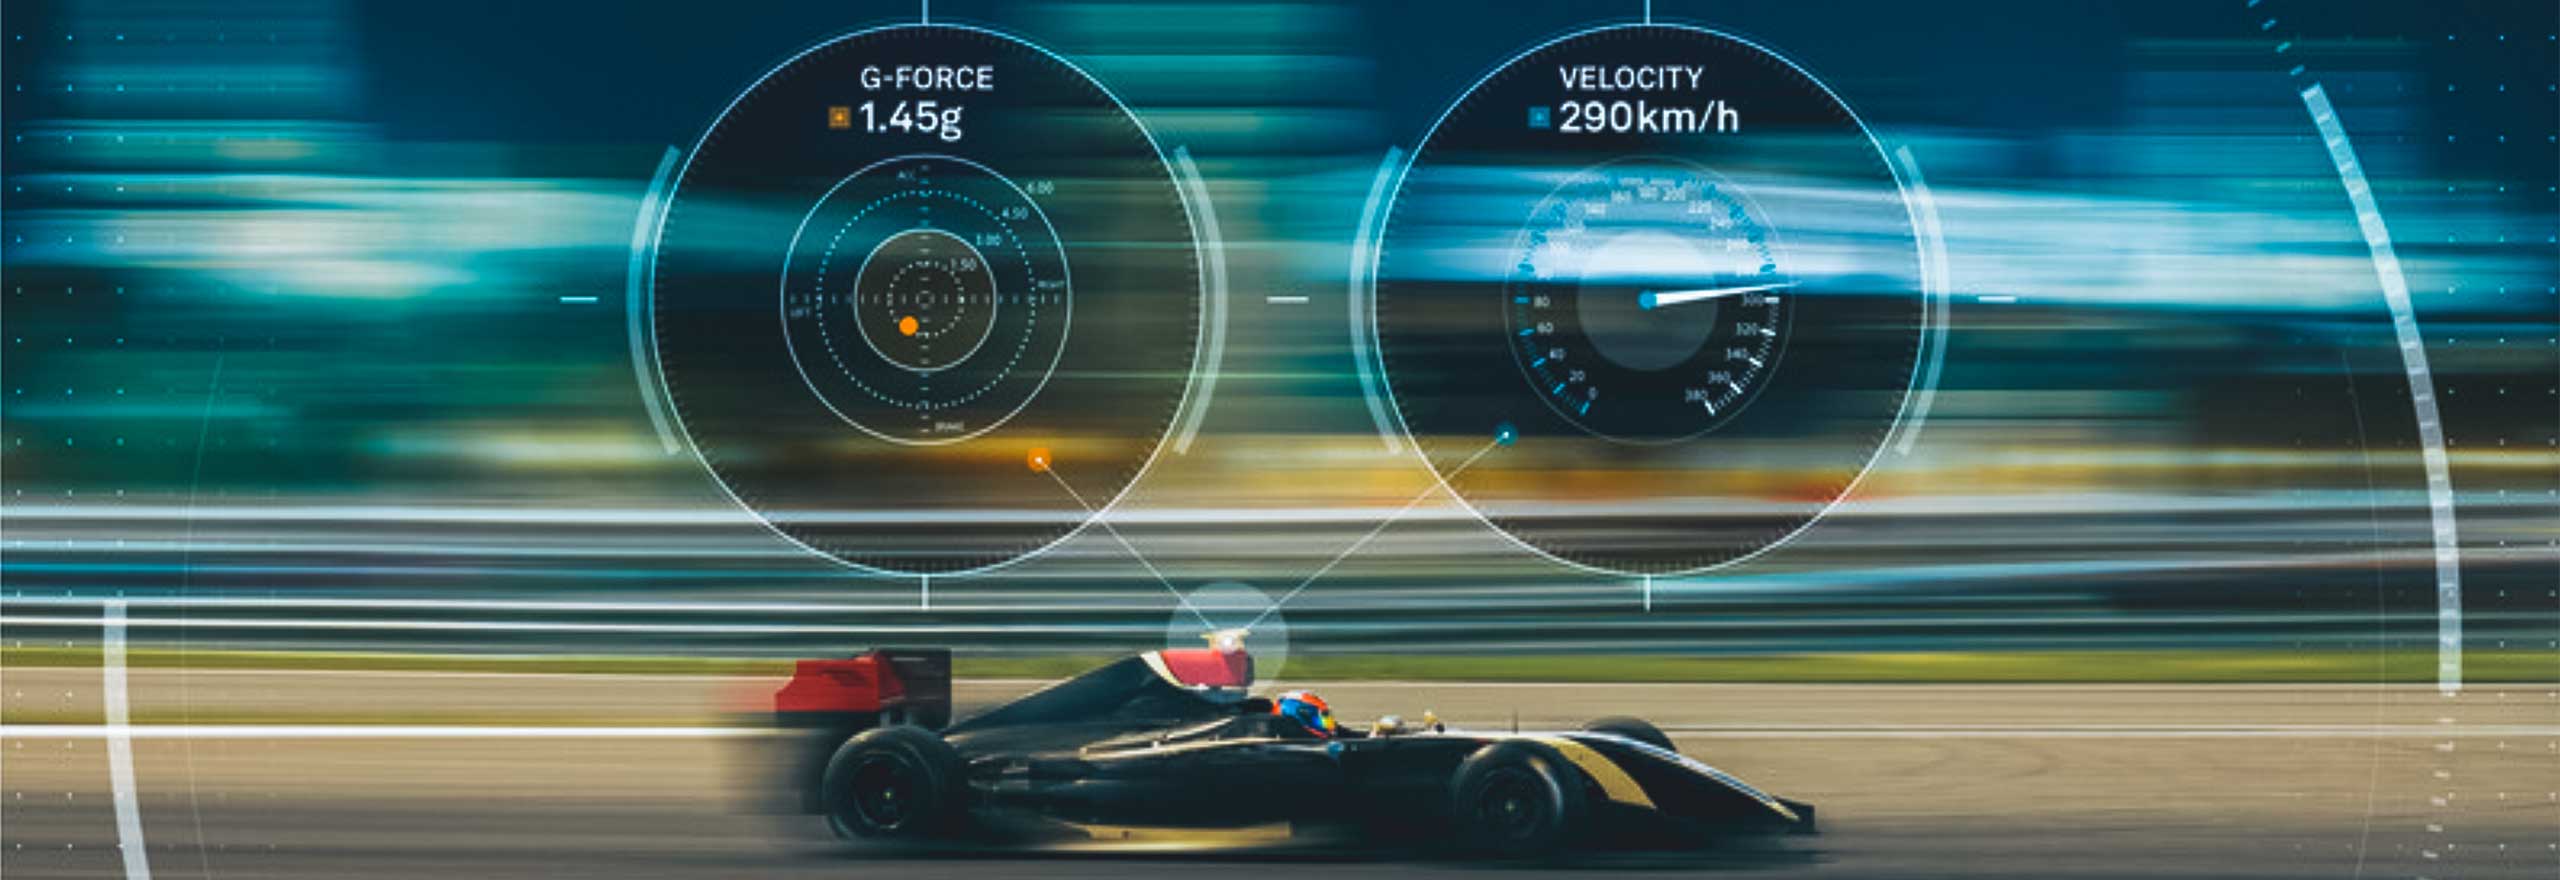 Ein Rennwagen mit digitaler Anzeige von Geschwindigkeit und g-Kraft